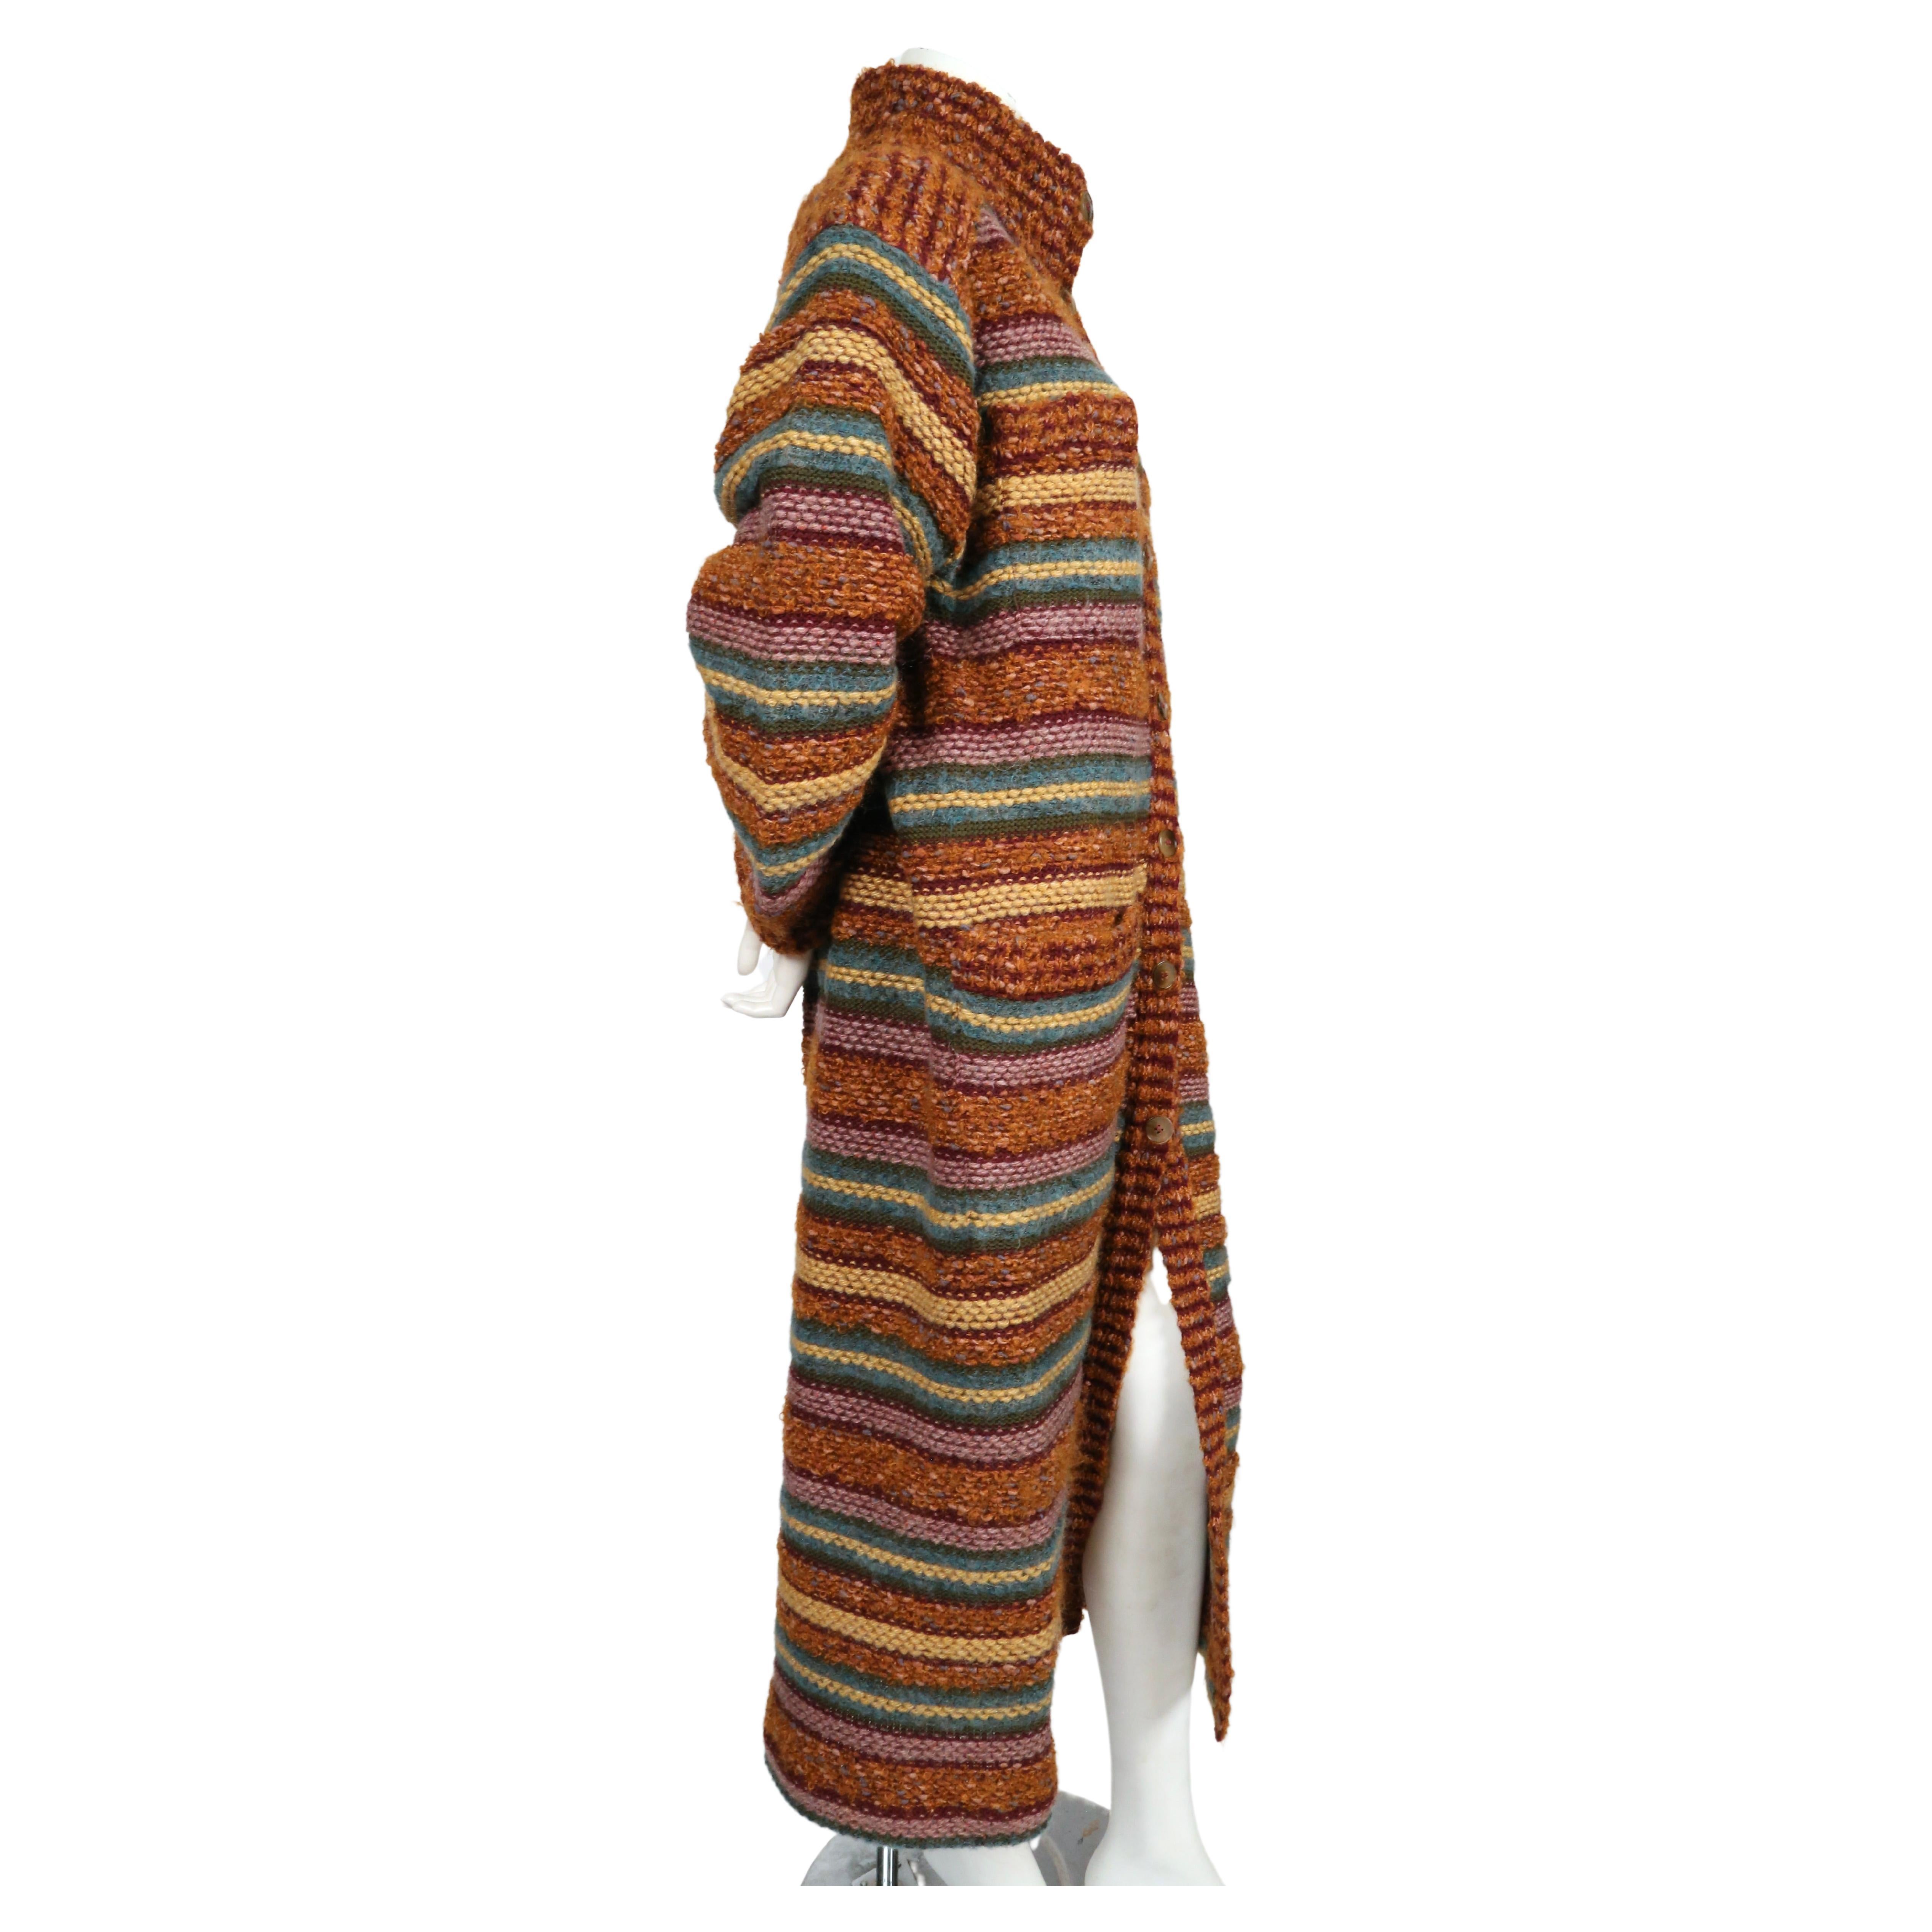 Long manteau pull rayé de Missoni datant des années 1970. Labellisée taille M. Mesures approximatives : épaule 20